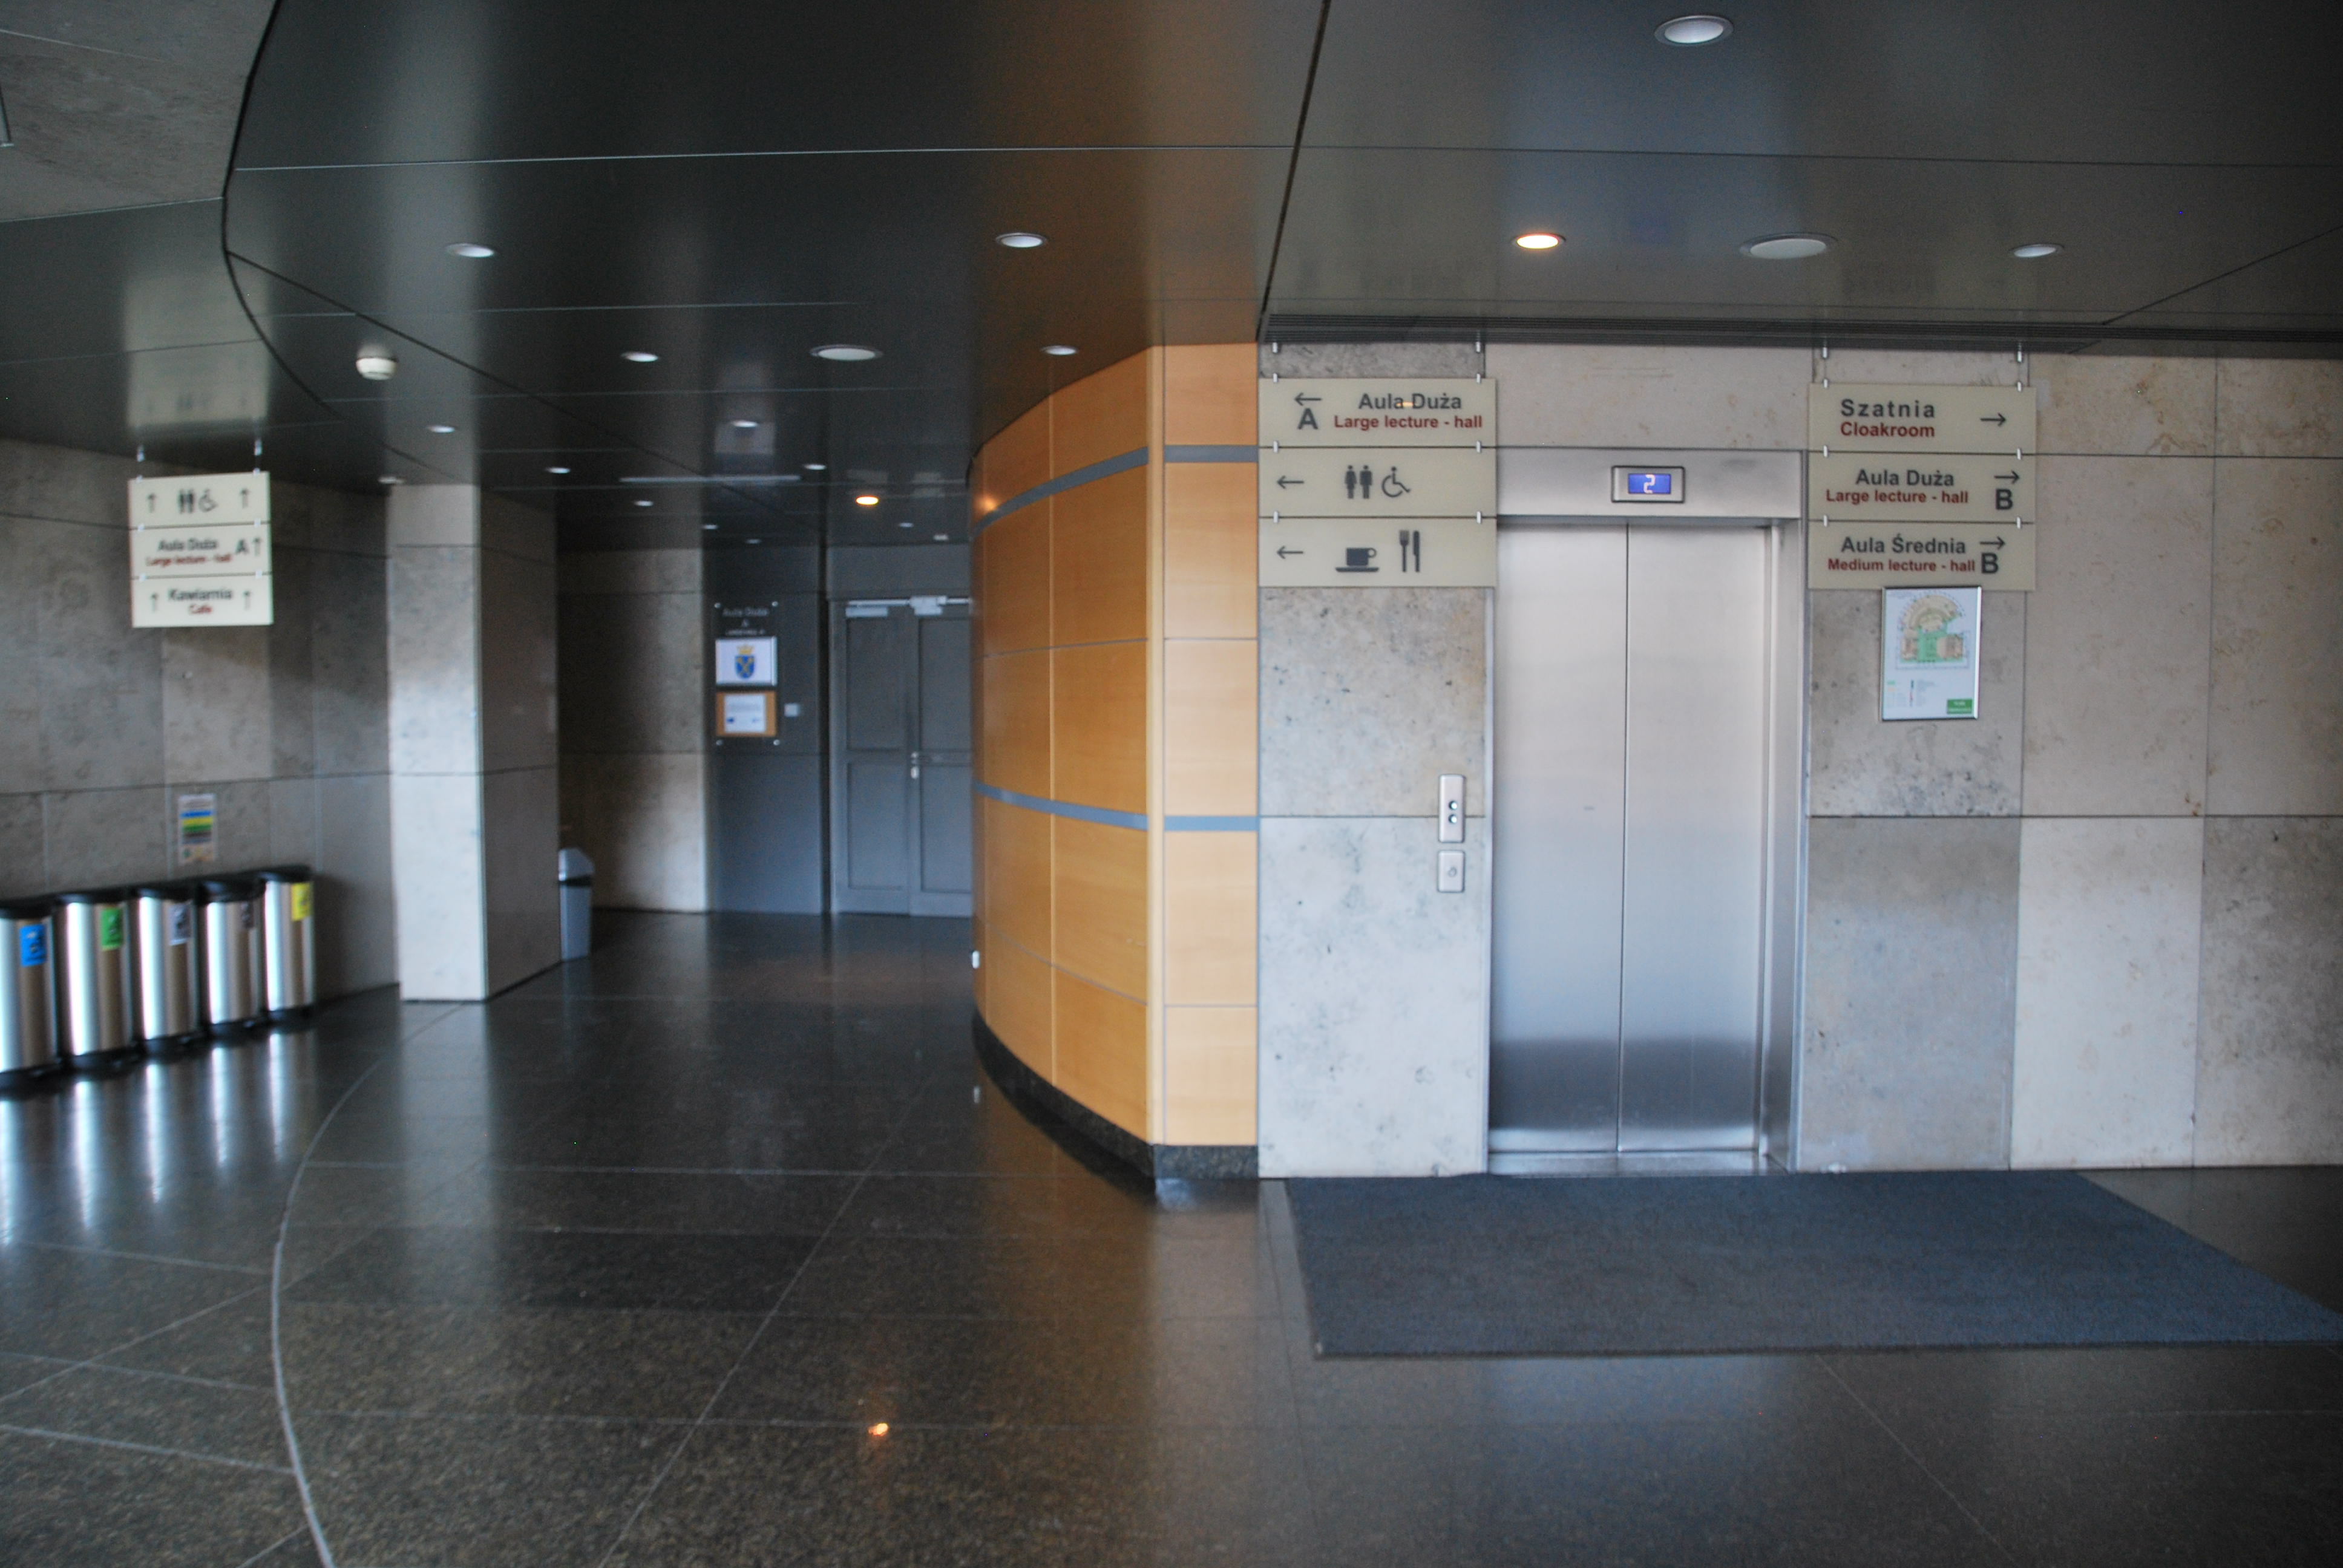 Wejście do windy na poziomie 0. Po prawej stronie od windy znajdują się tabliczki kierujące do szatni, Auli Dużej B i Auli Średniej B. Po lewej stronie od windy znajdują się tabliczki kierujące do Auli Dużej A, Toalety i Kawiarni.